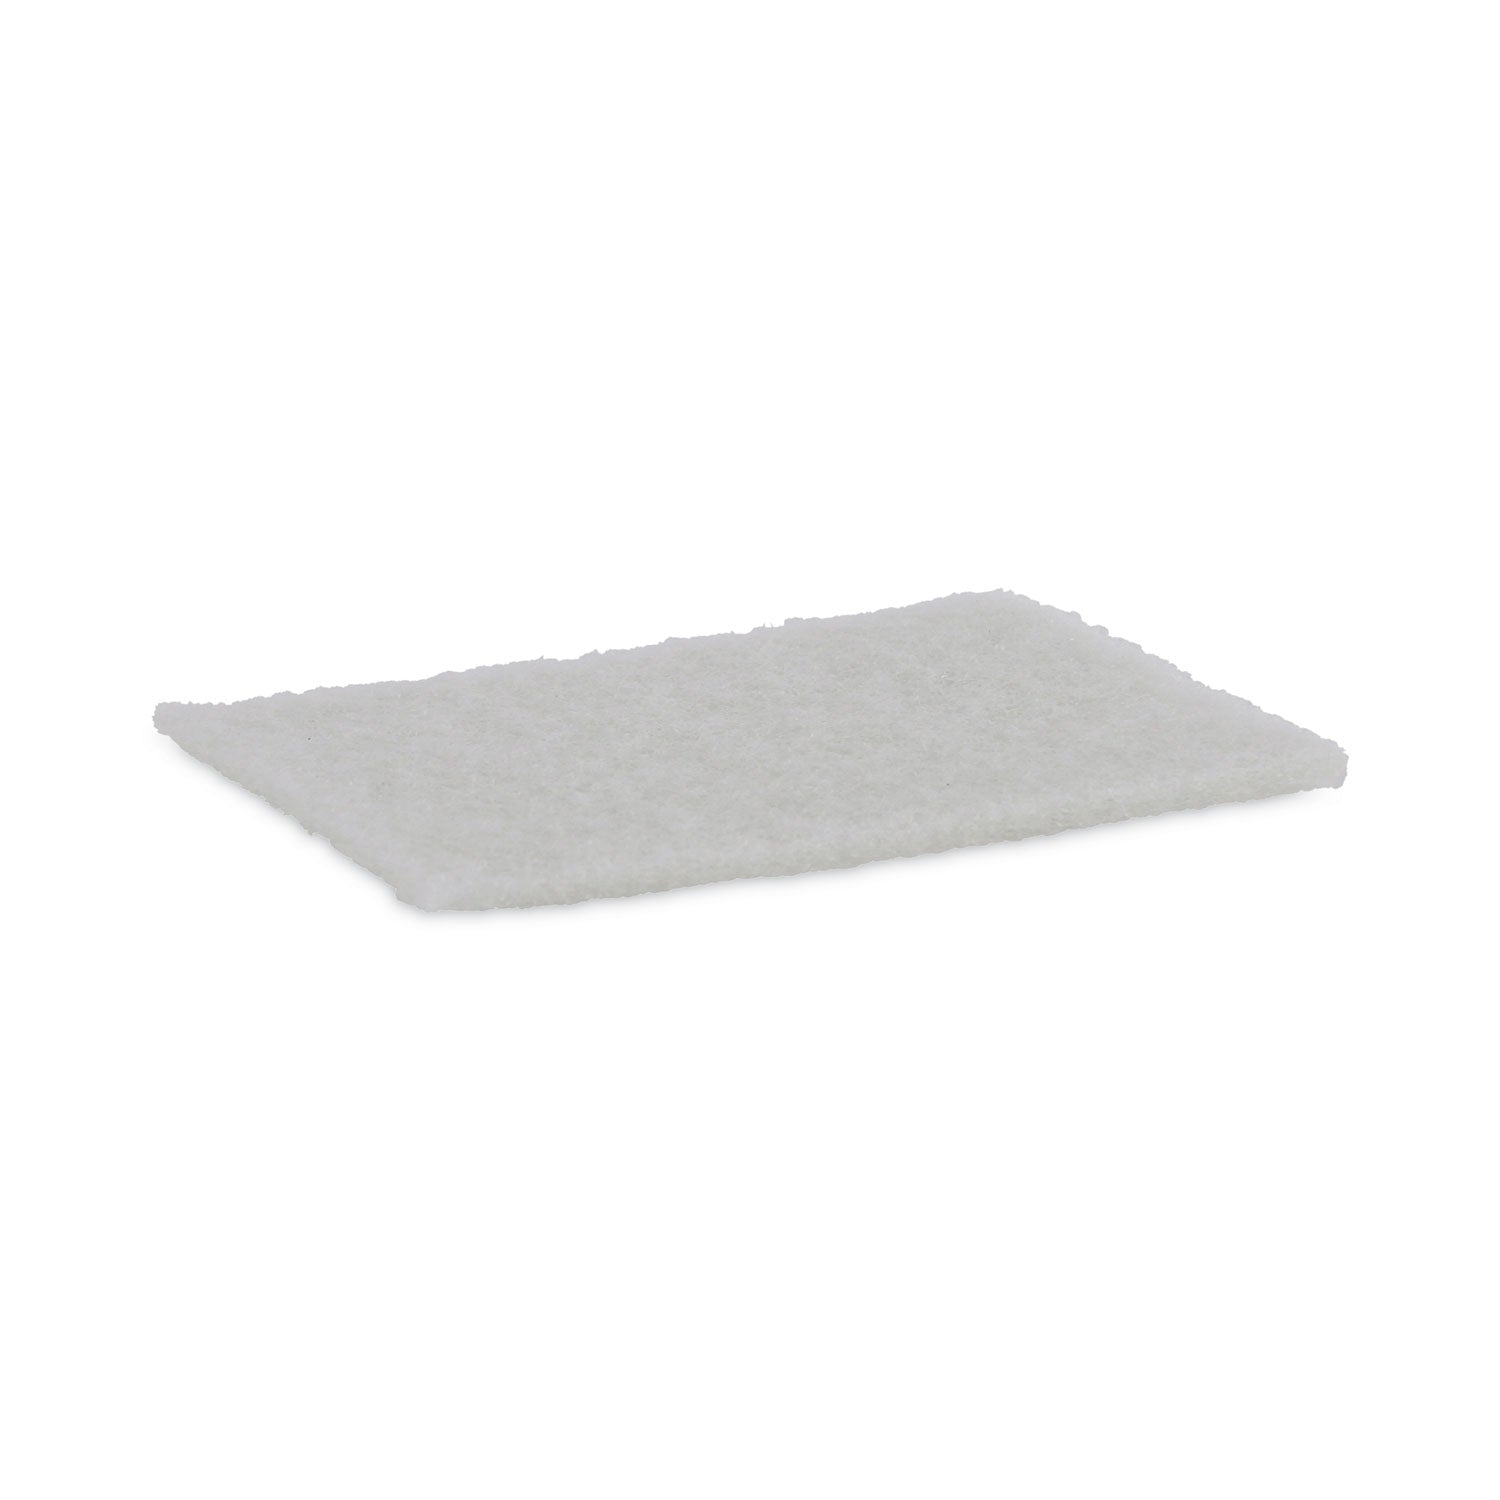 Light Duty Scour Pad, White, 6 x 9, White, 20/Carton - 